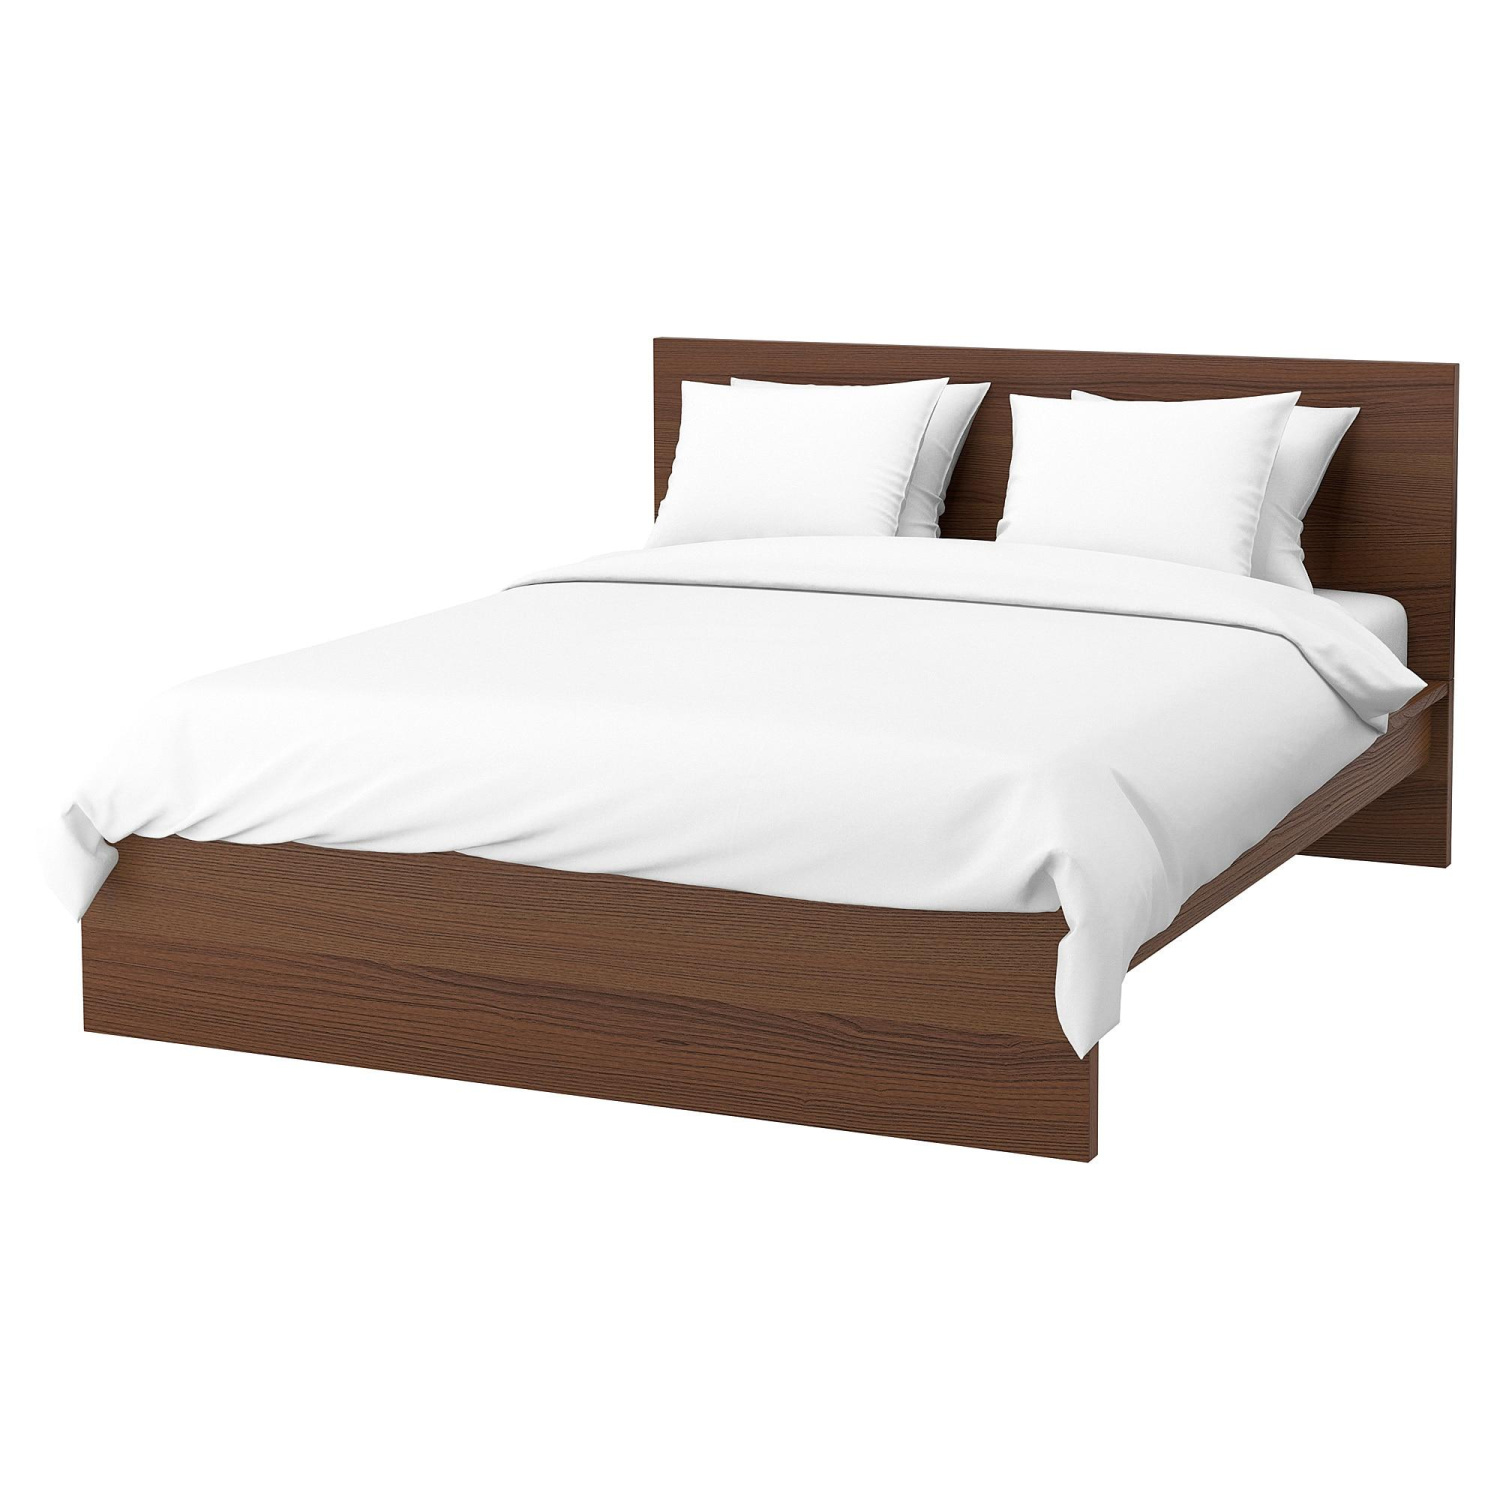 Двуспальная кровать Мальм коричневый ИКЕА (IKEA)